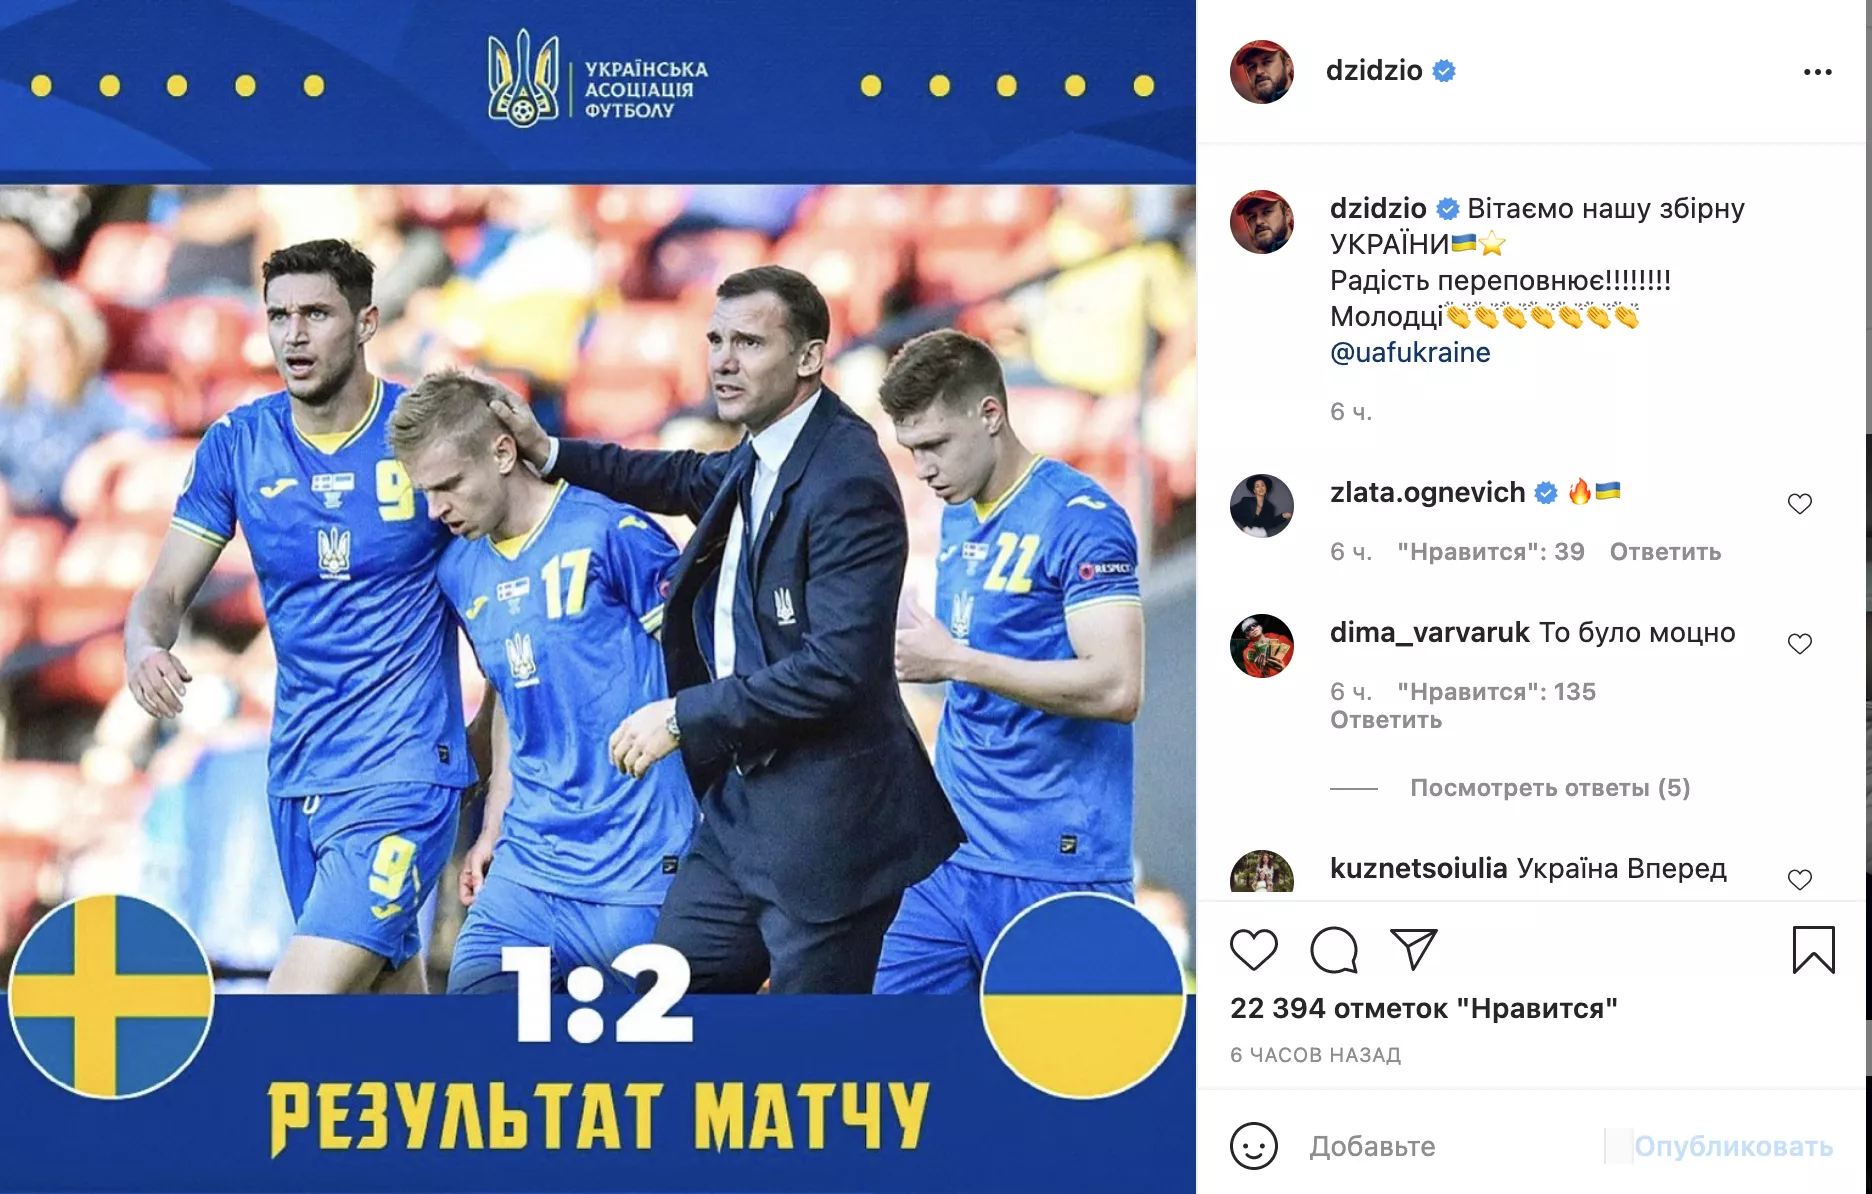 DZIDZIO поздравил украинскую сборную с выходом в четвертьфинал на "Евро-2020"